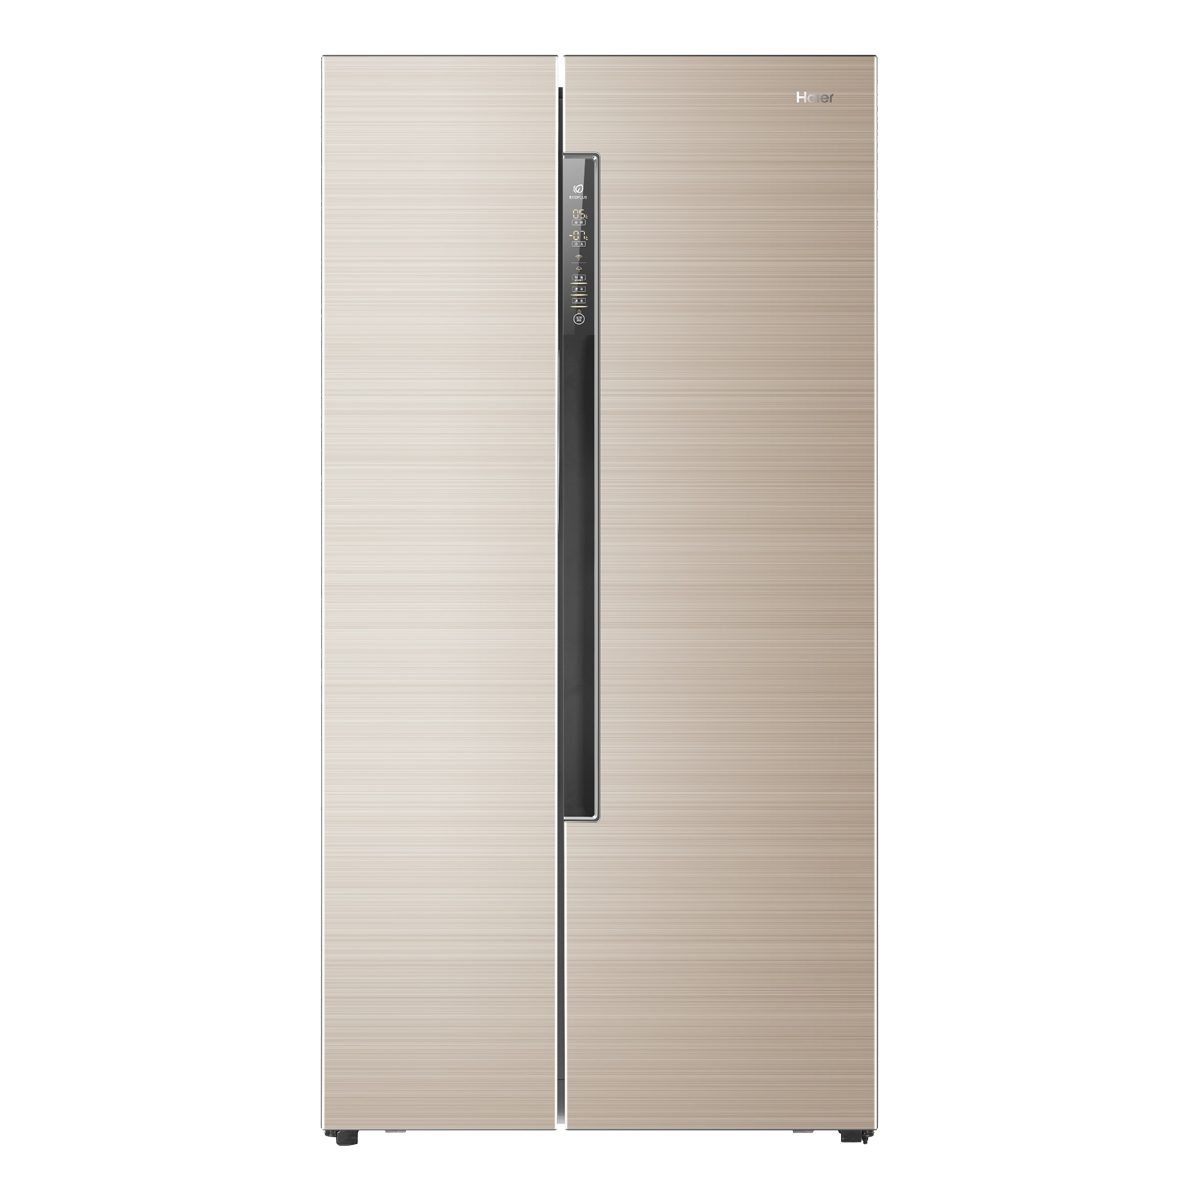 海尔Haier冰箱 BCD-642WDVMU1 说明书